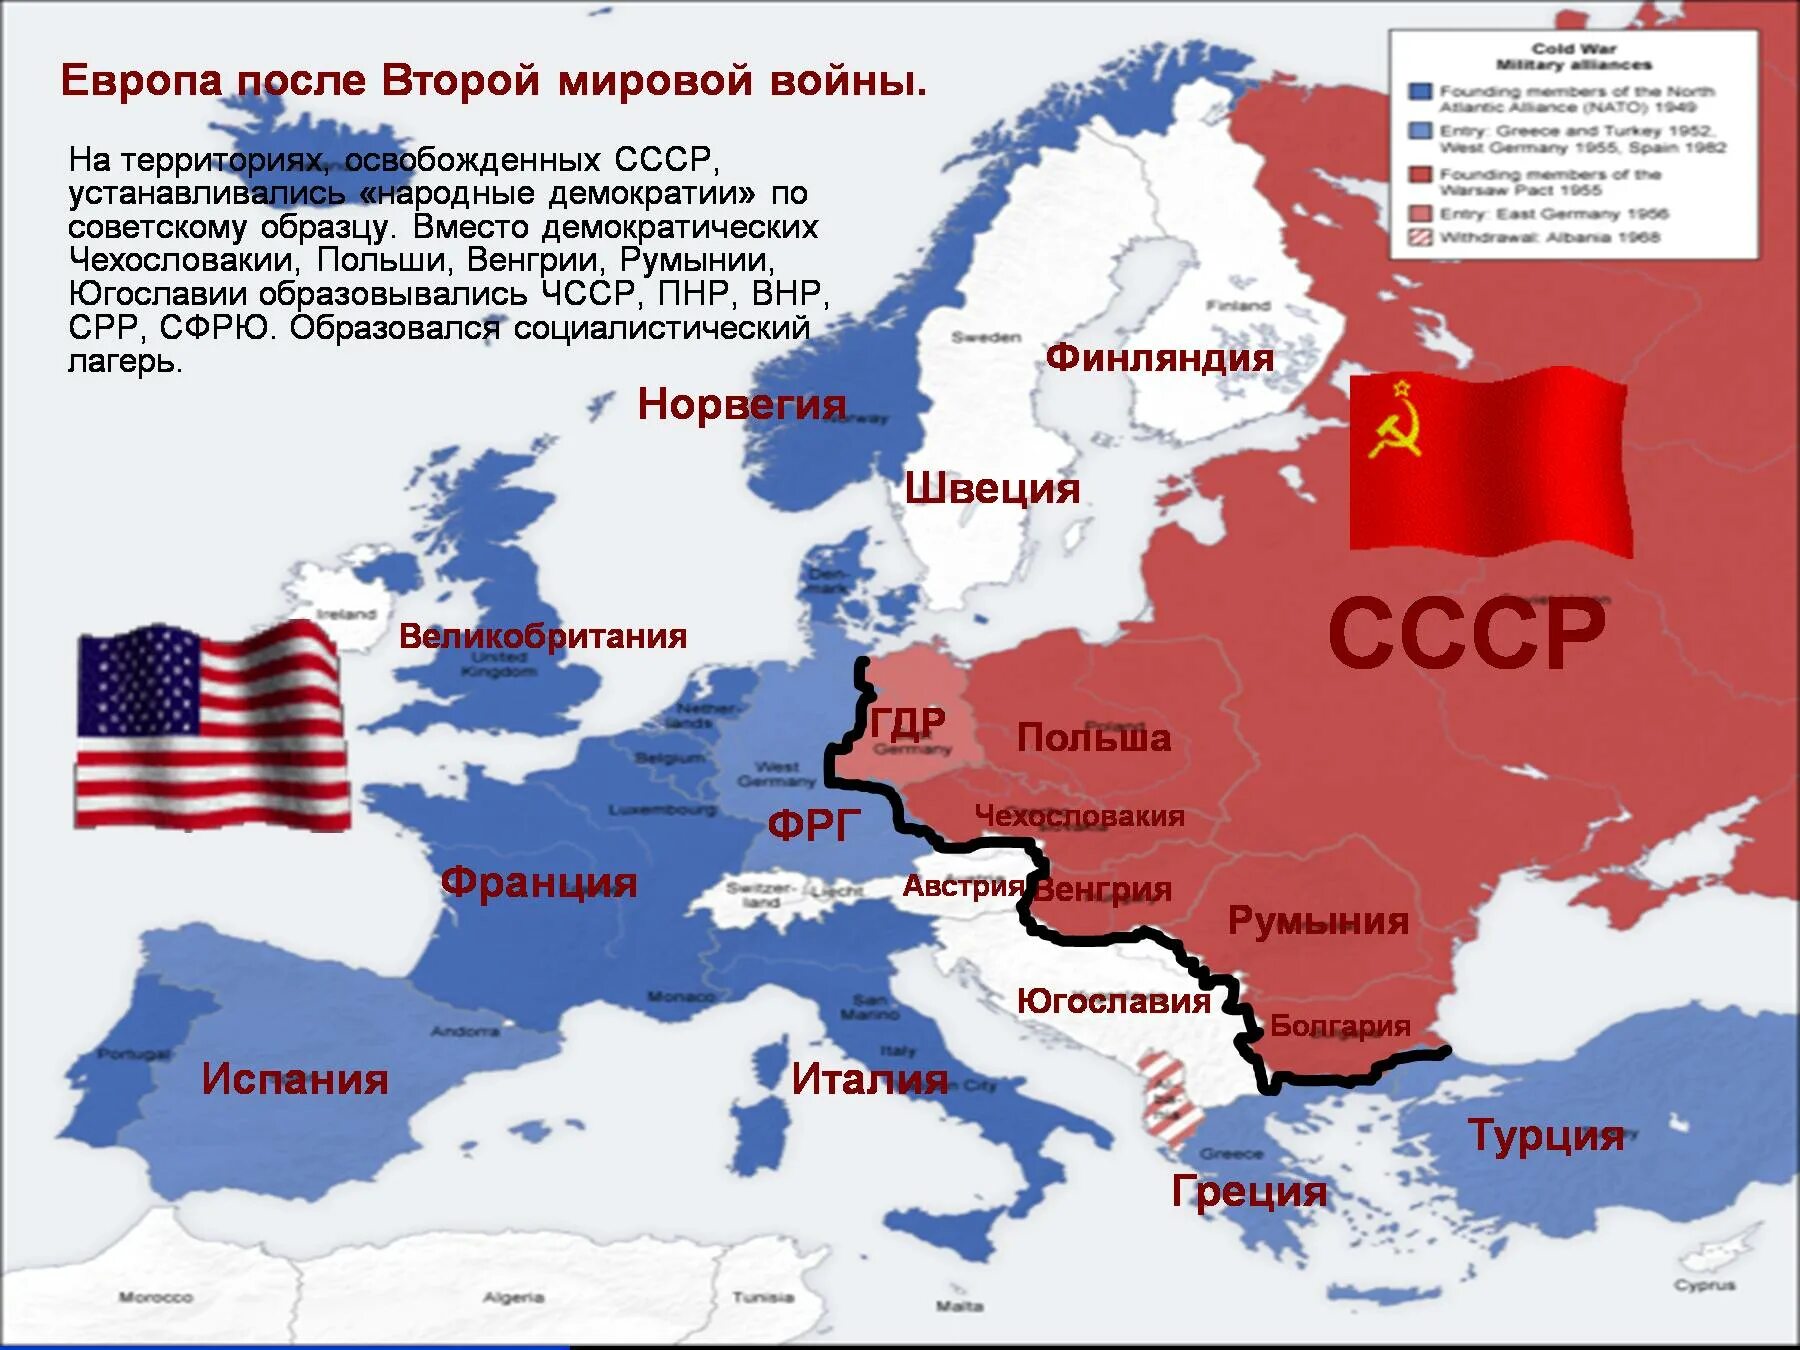 Как изменилось после 2 мировой войны. Территория СССР до 2 мировой войны. Карта холодной войны СССР - США. Территория СССР после 2 мировой войны. Границы СССР после второй мировой войны.